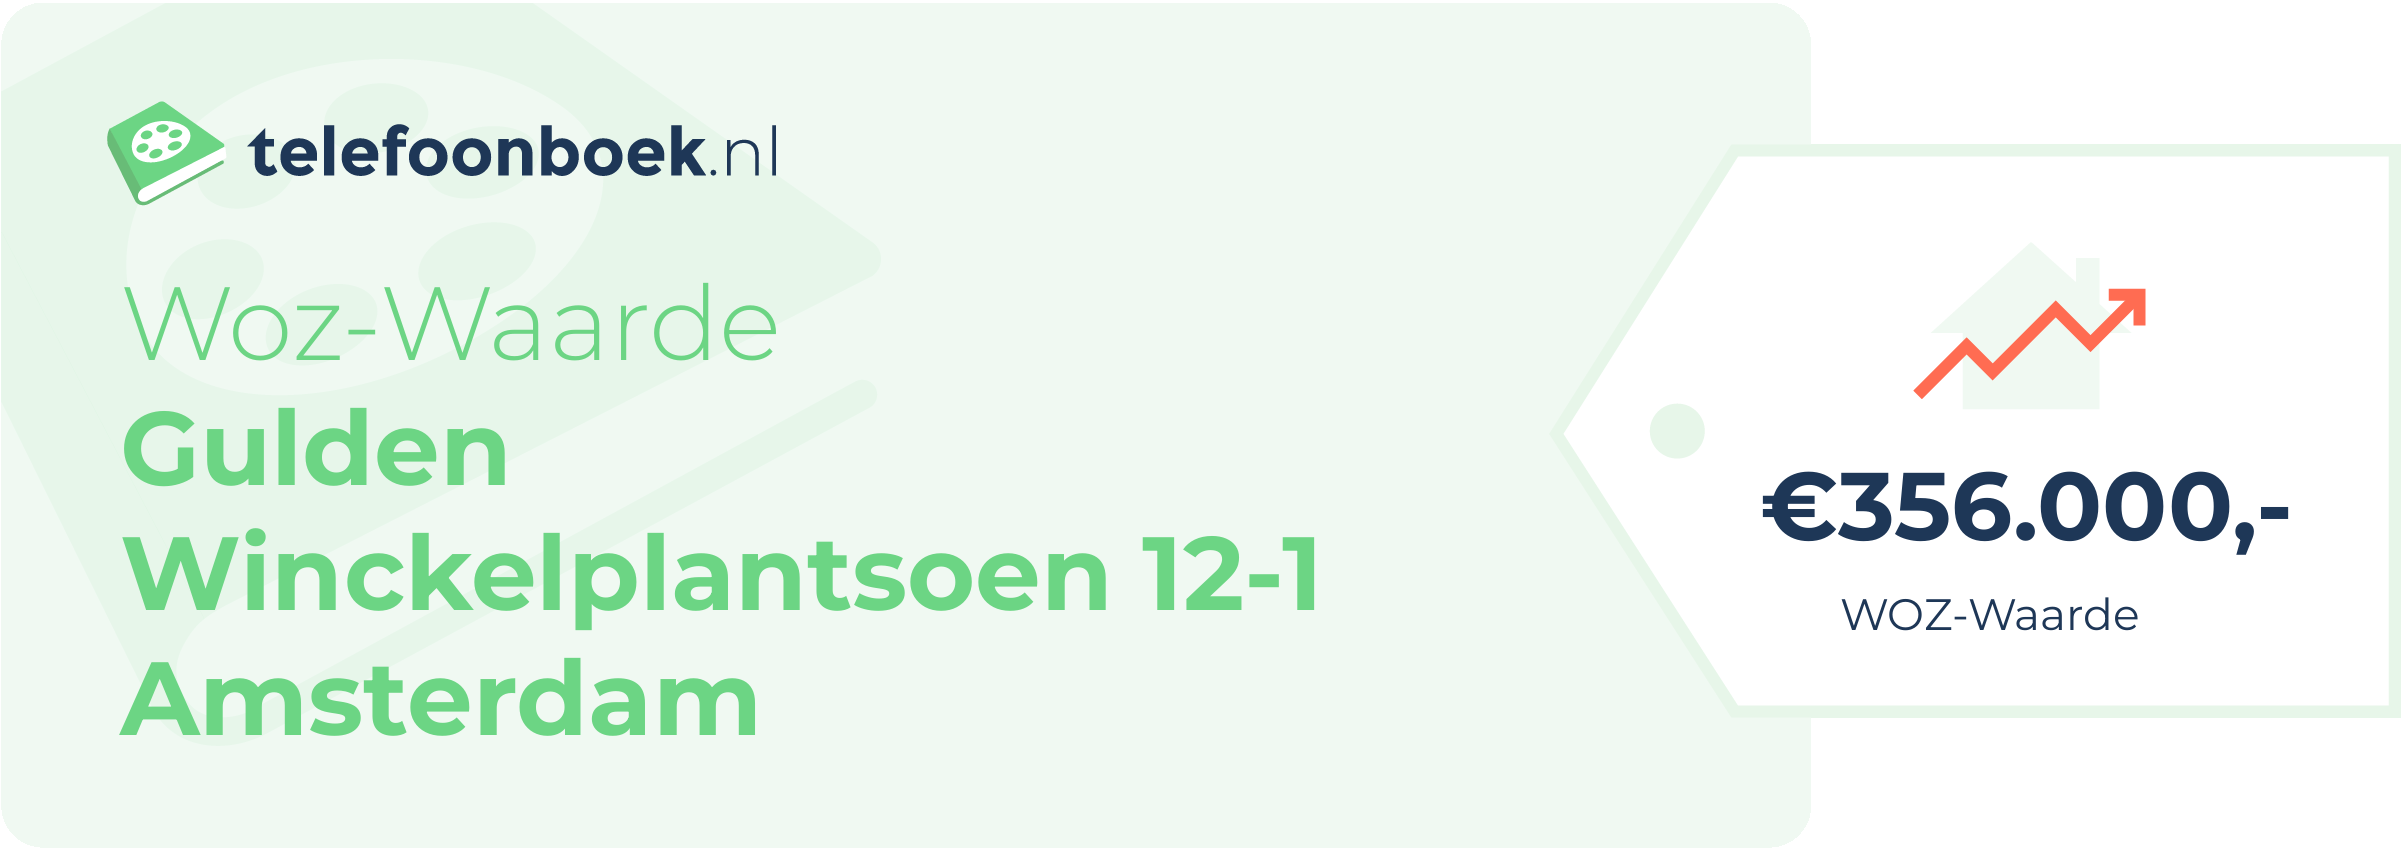 WOZ-waarde Gulden Winckelplantsoen 12-1 Amsterdam